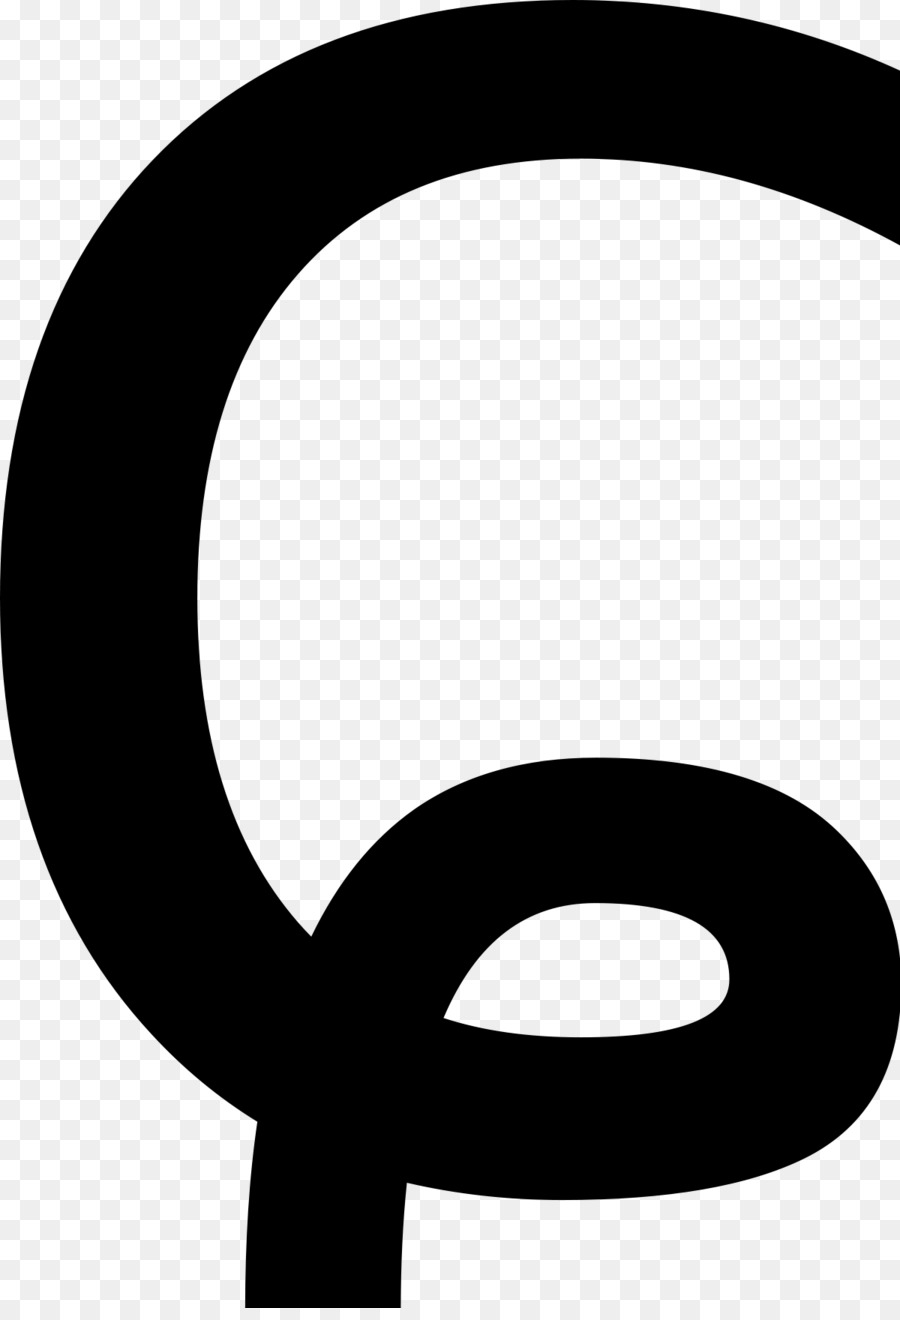 Phonetische Symbole in Unicode Internationale Phonetische Alphabet Stimmlos alveolo-palatalen fricative Sprache Öffnen-Mitte zurück gerundeten Vokal - andere